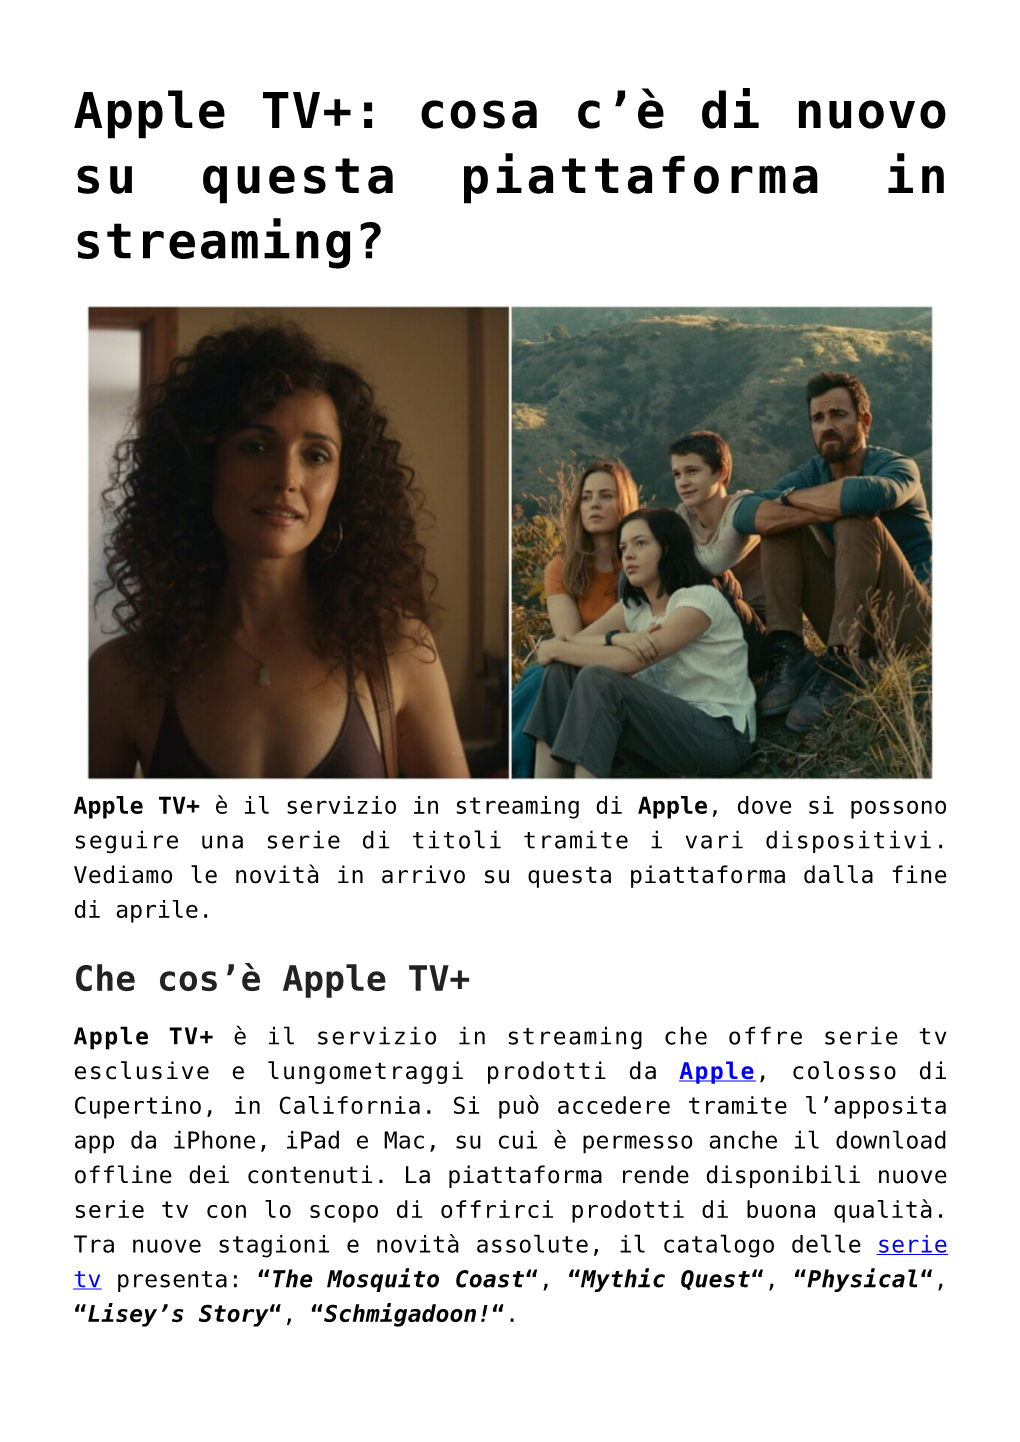 Apple TV+: Cosa C&#8217;È Di Nuovo Su Questa Piattaforma in Streaming?